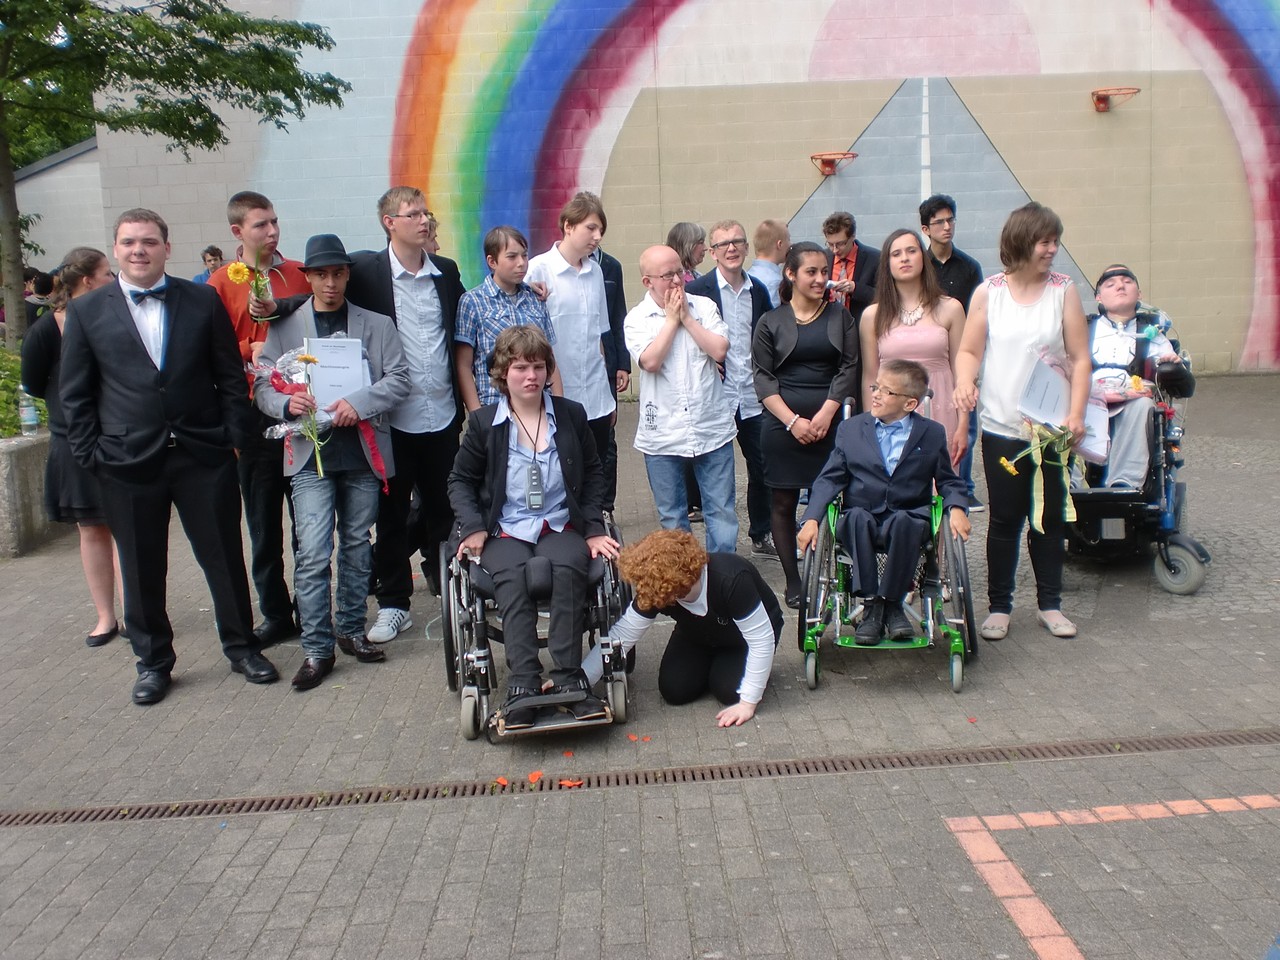 Alle Schülerinnen und Schüler auf einem Gruppenfoto vor dem Regenbogen